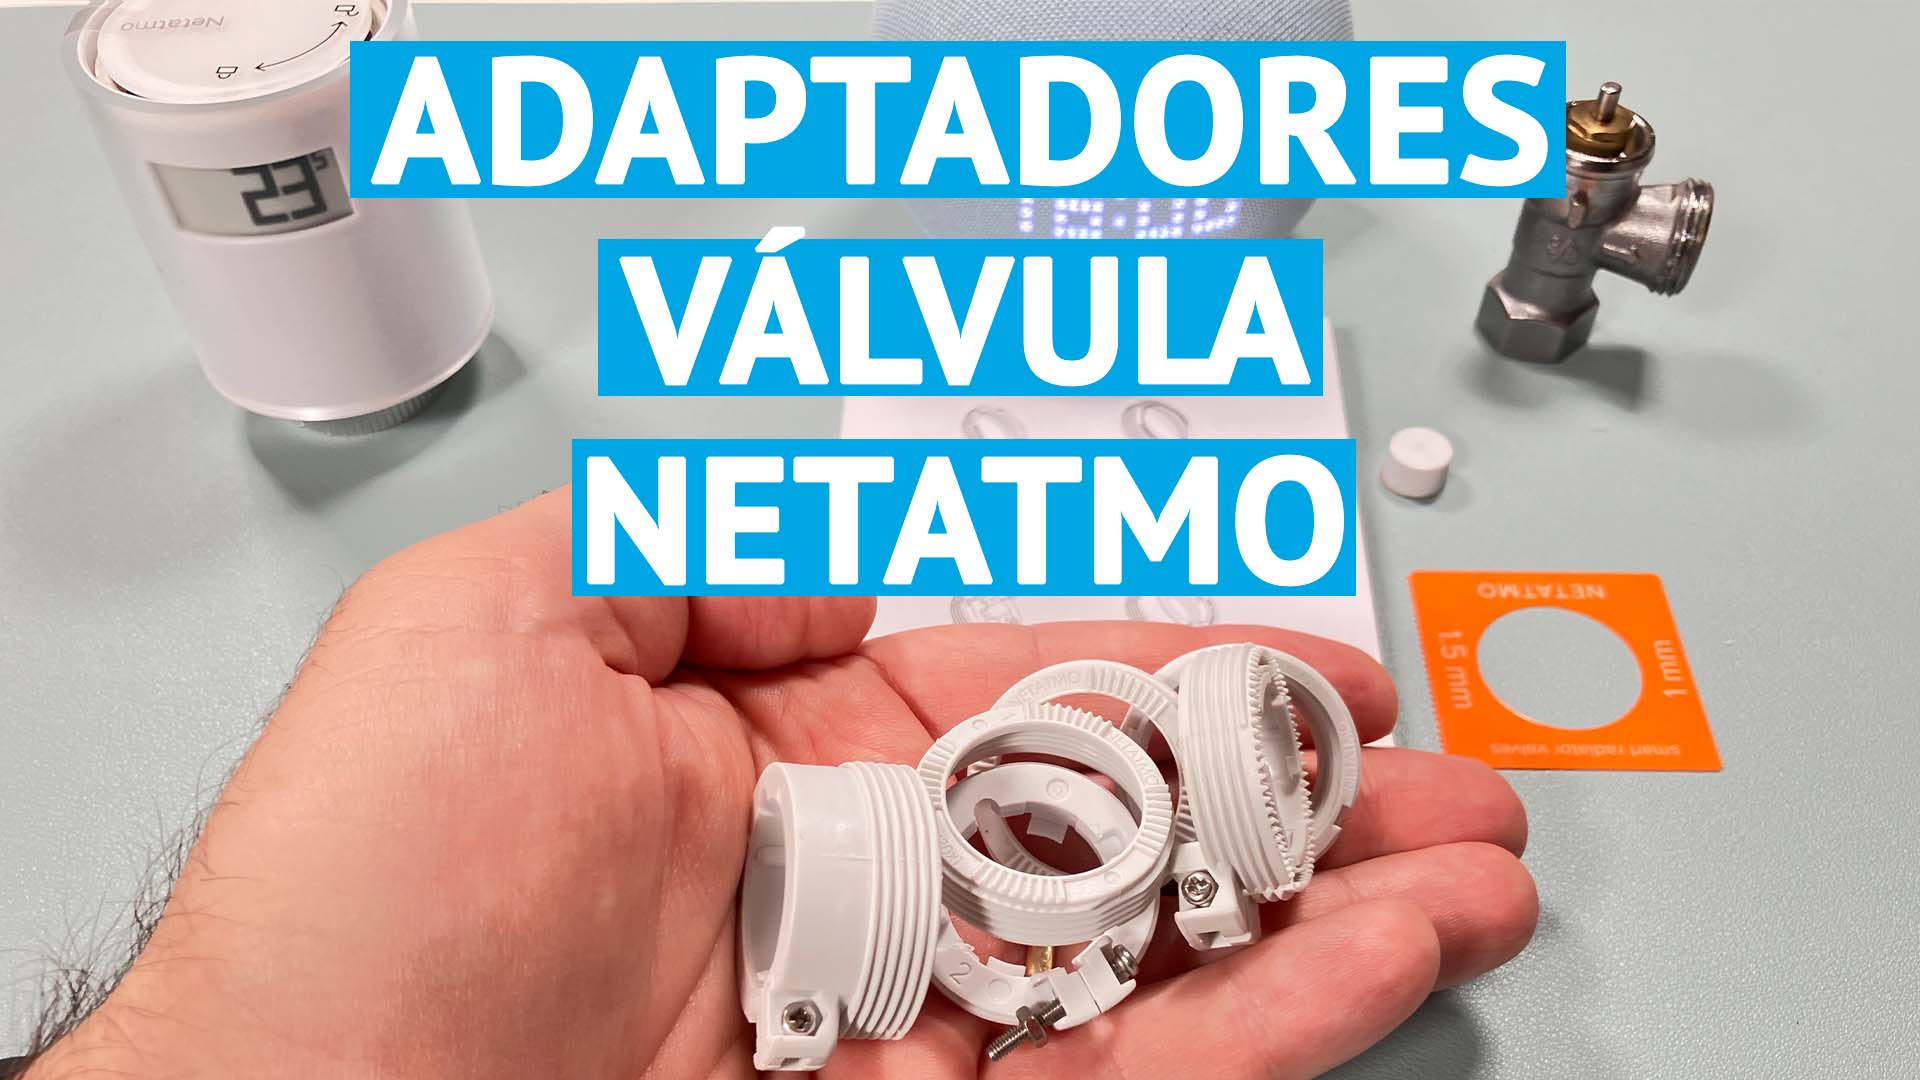 Cómo instalar la válvula Netatmo en el radiador con adaptador